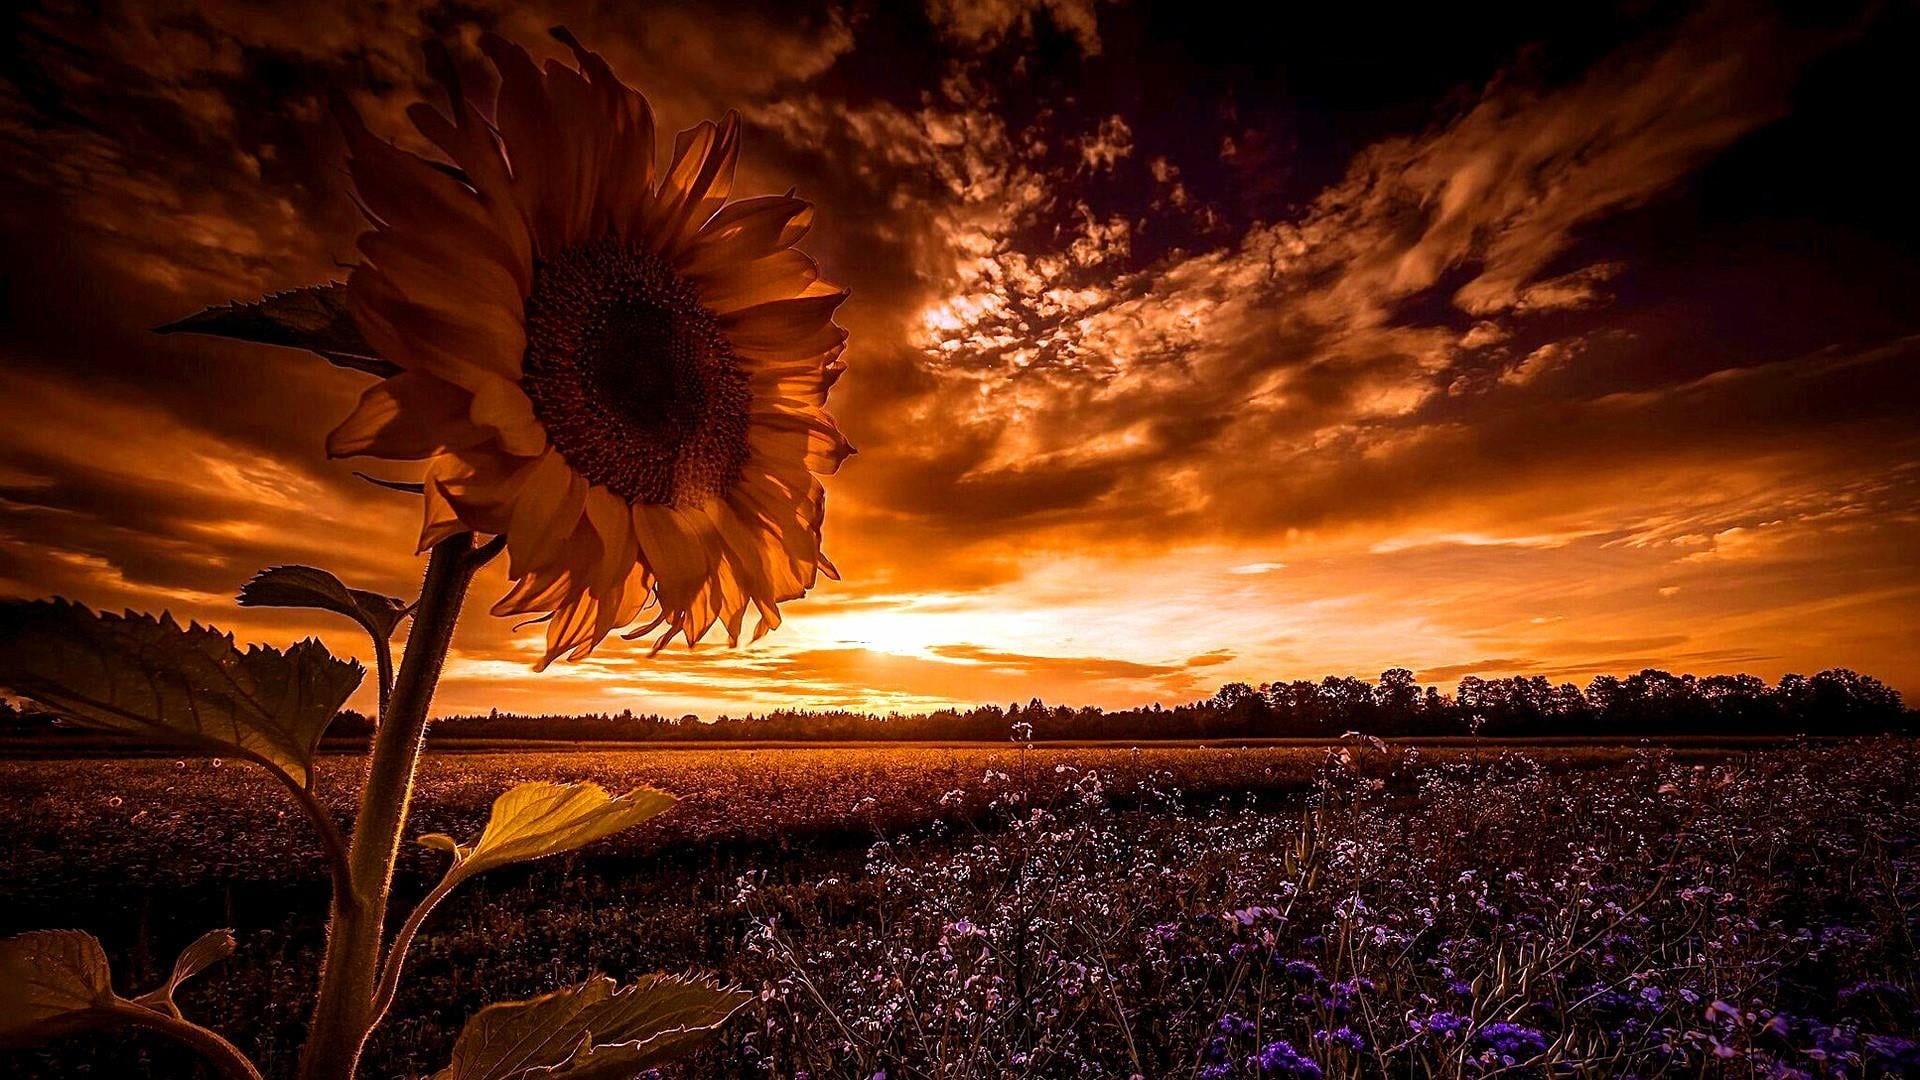 sunflower #sunset #field #landscape #summer flower field #dusk P # wallpaper #hdwallpaper #desktop. Summer landscape, Sunflower sunset, Flower field